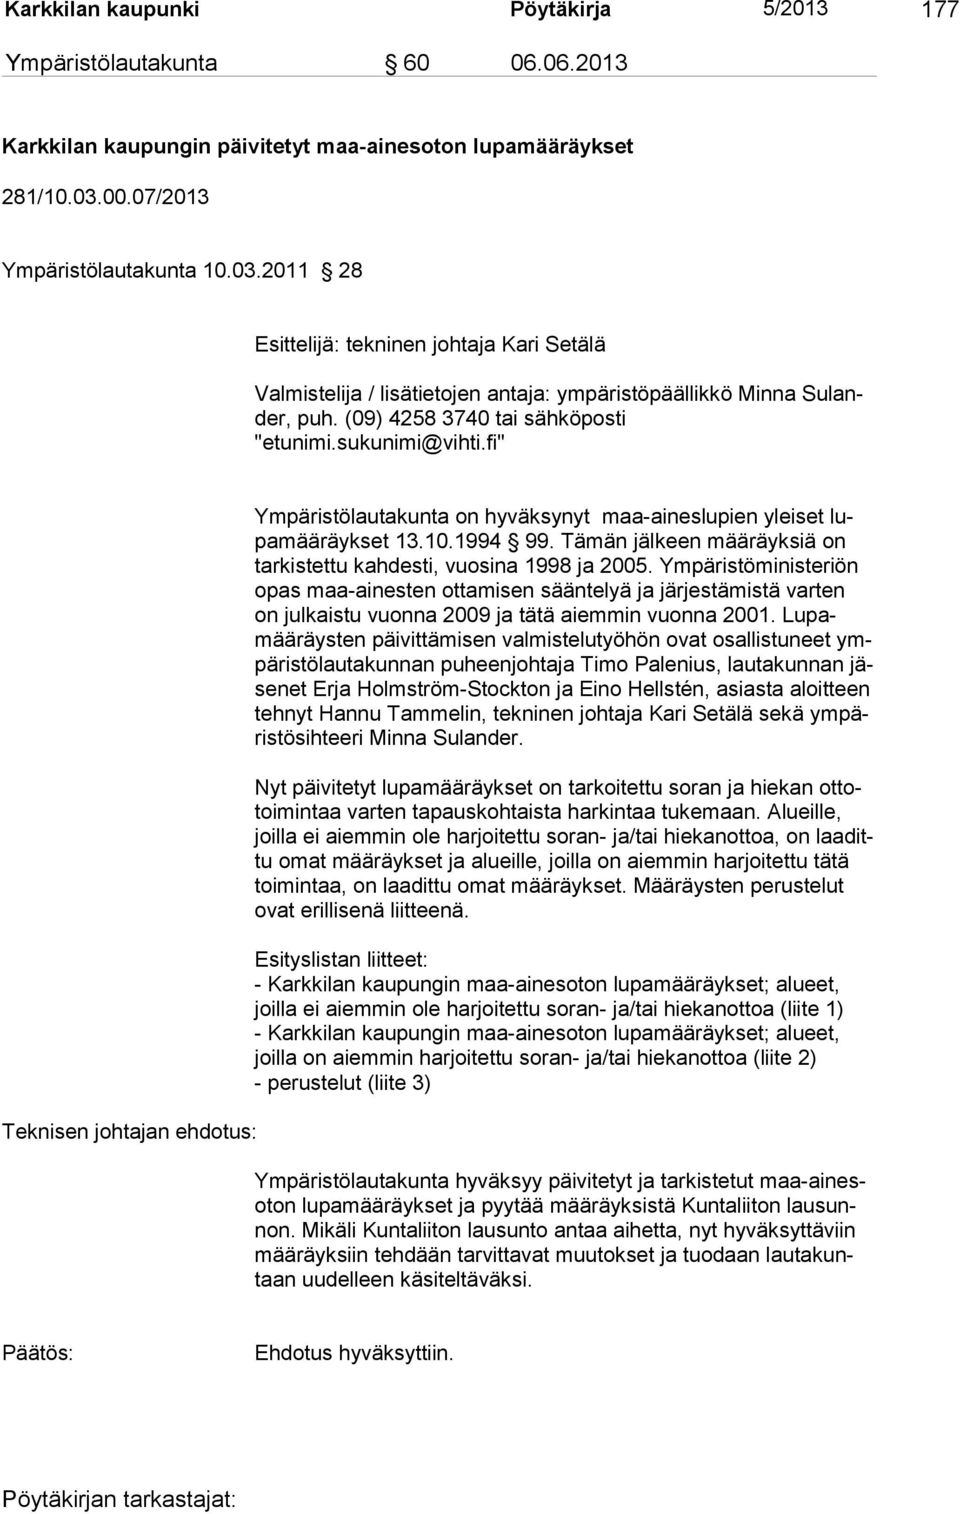 (09) 4258 3740 tai sähköposti "etunimi.sukunimi@vihti.fi" Teknisen johtajan ehdotus: Ympäristölautakunta on hyväksynyt maa-aineslupien yleiset lupamääräykset 13.10.1994 99.